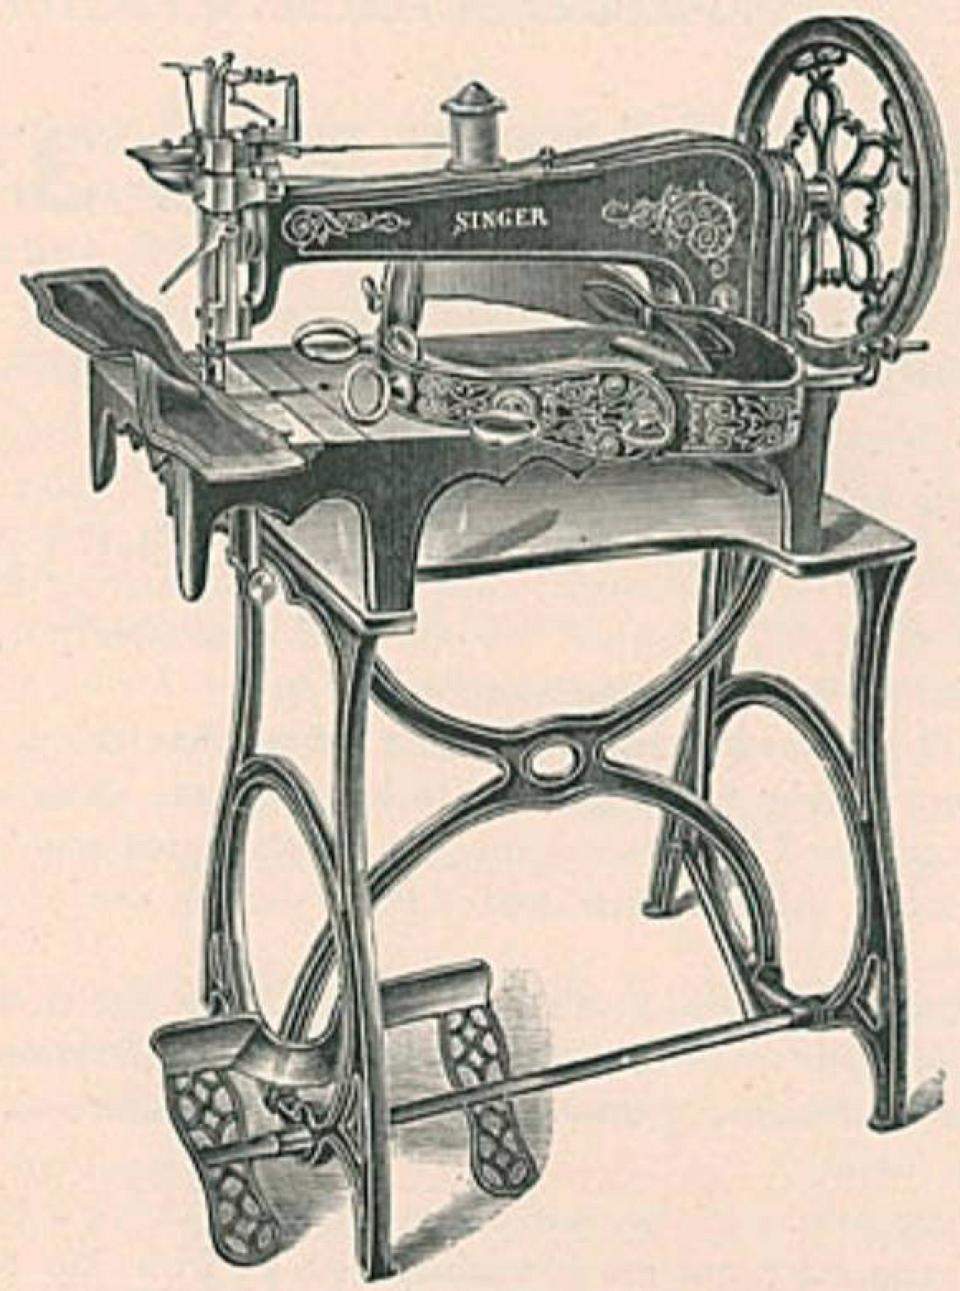 Singer Industrial Sewing Machine Model 3-1